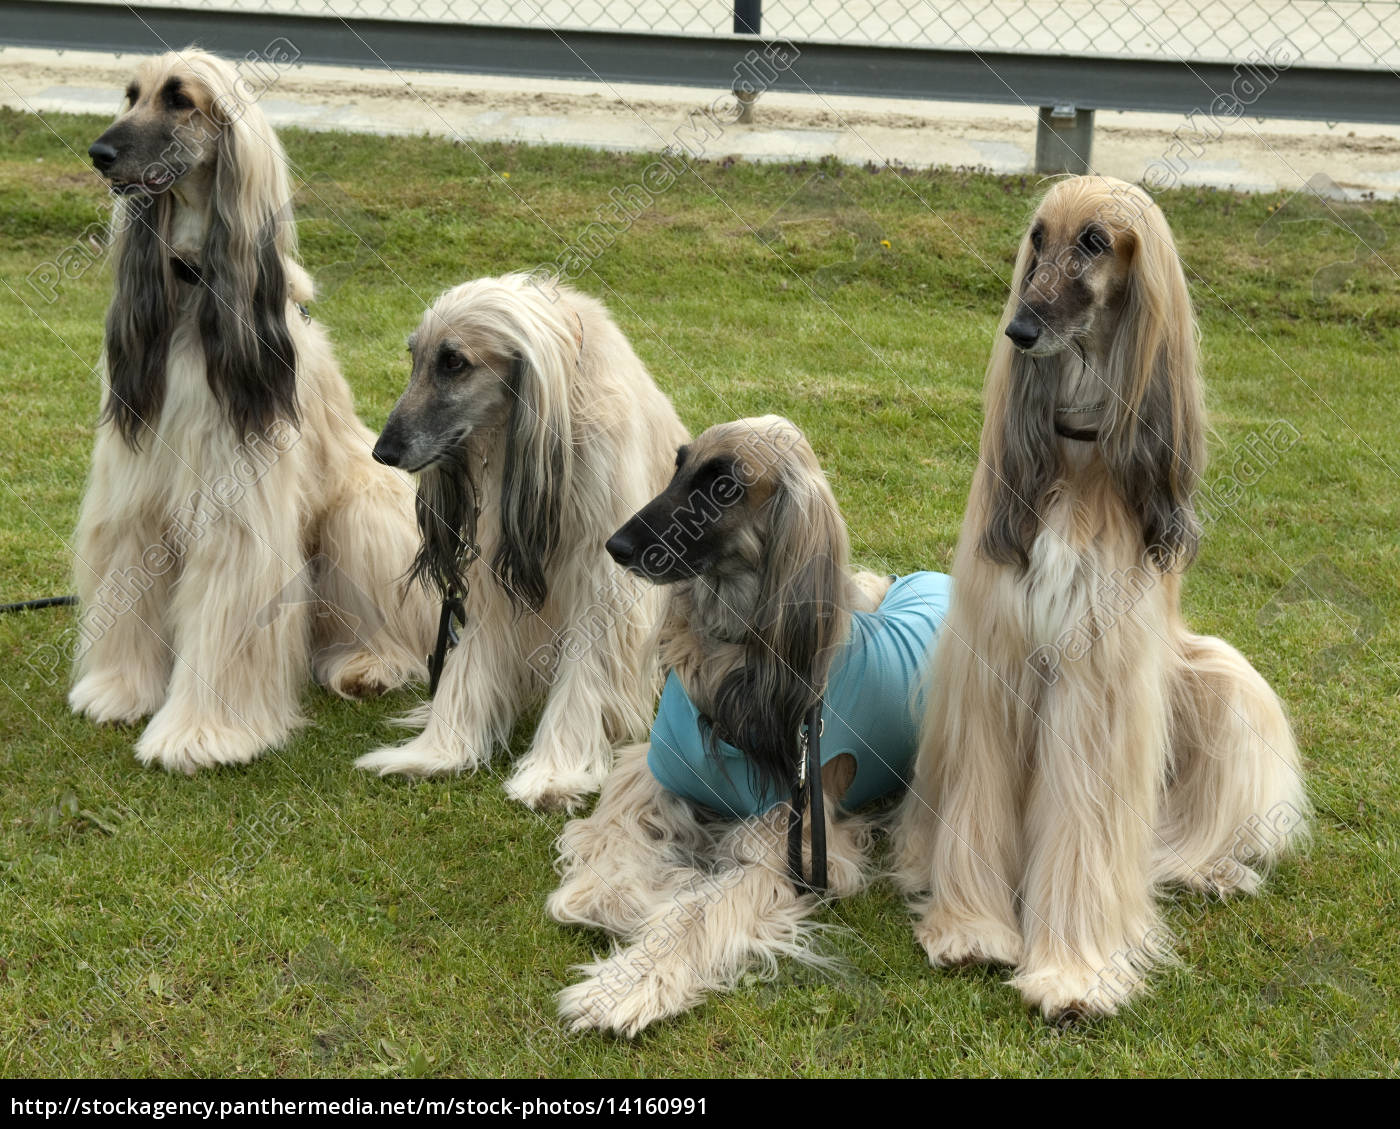 Afghane Afghanischer Windhund Hund Lizenzfreies Bild 14160991